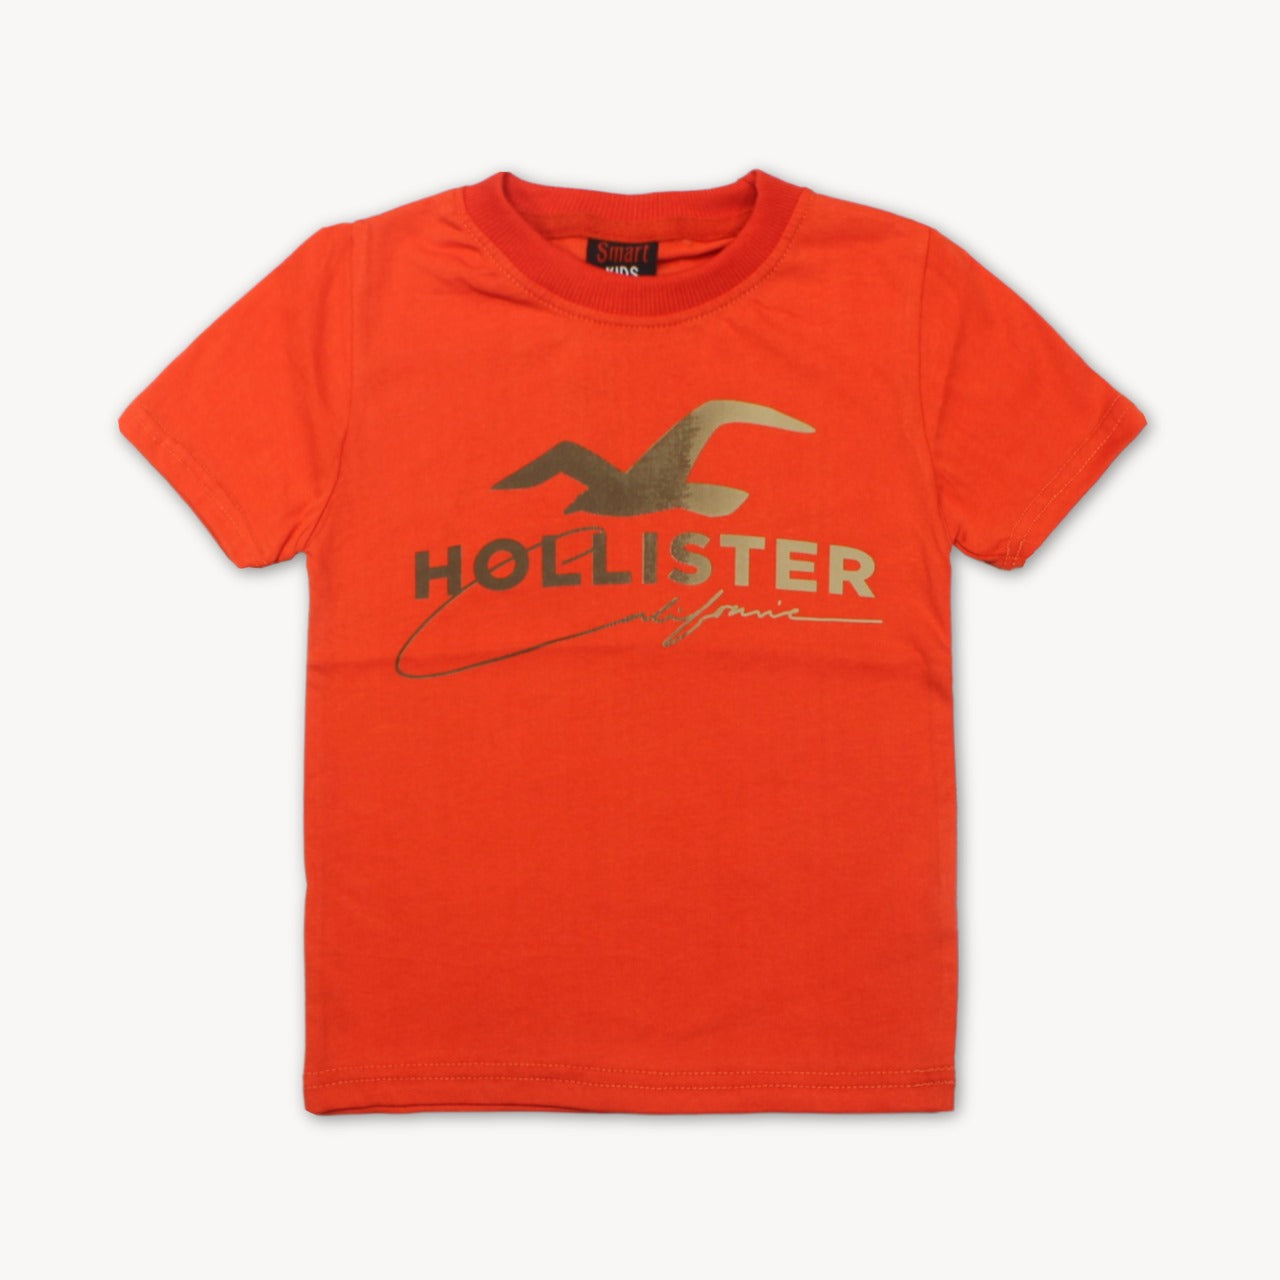 Dark Orange Hollister Printed Cotton T-Shirt